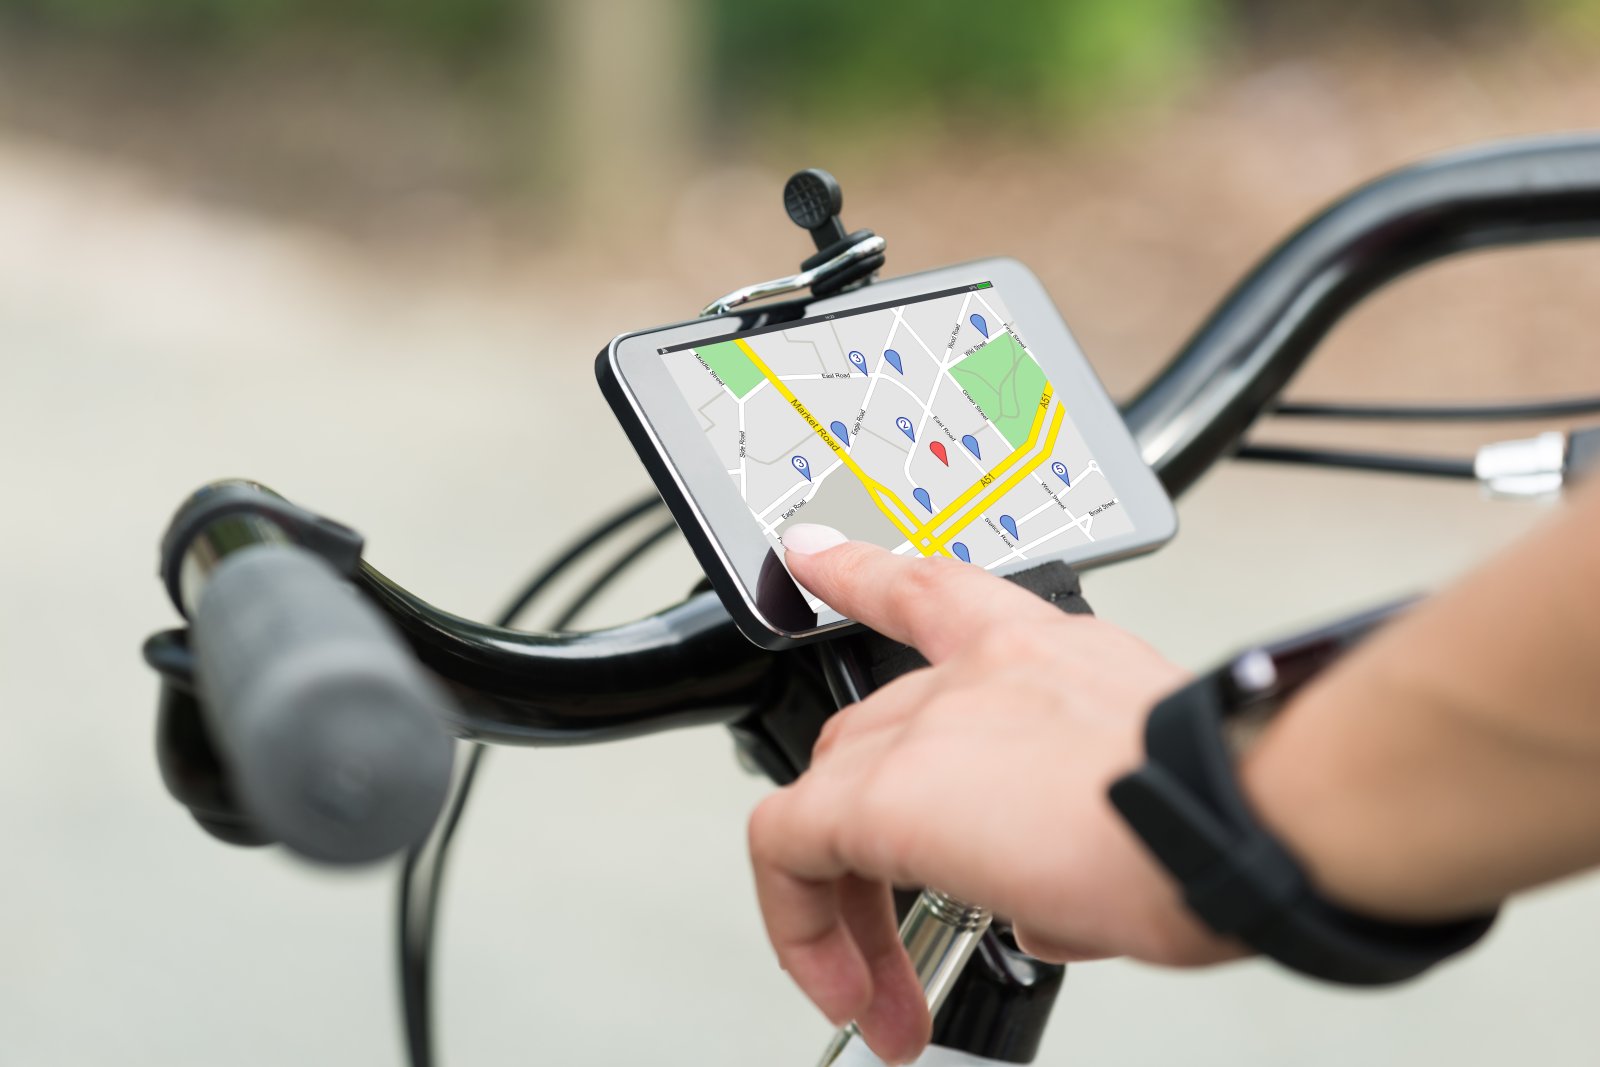 Handy-Halterung fürs Fahrrad: Nutze Google Maps zu deinem Vorteil -  Futurezone